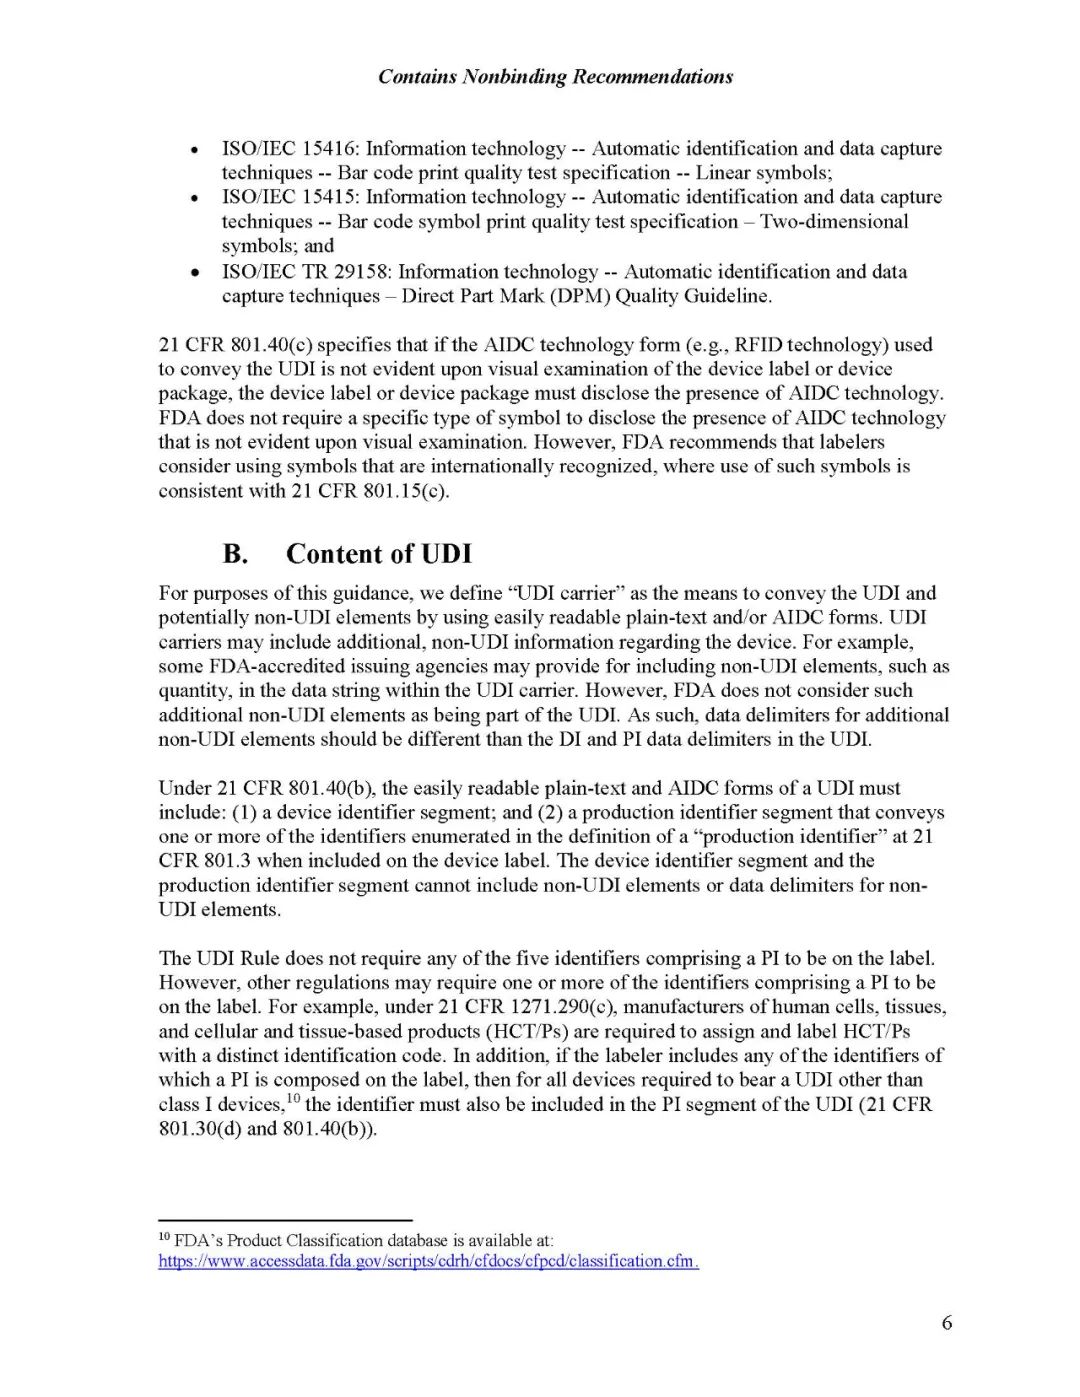 美国FDA UDI格式和内容指南9